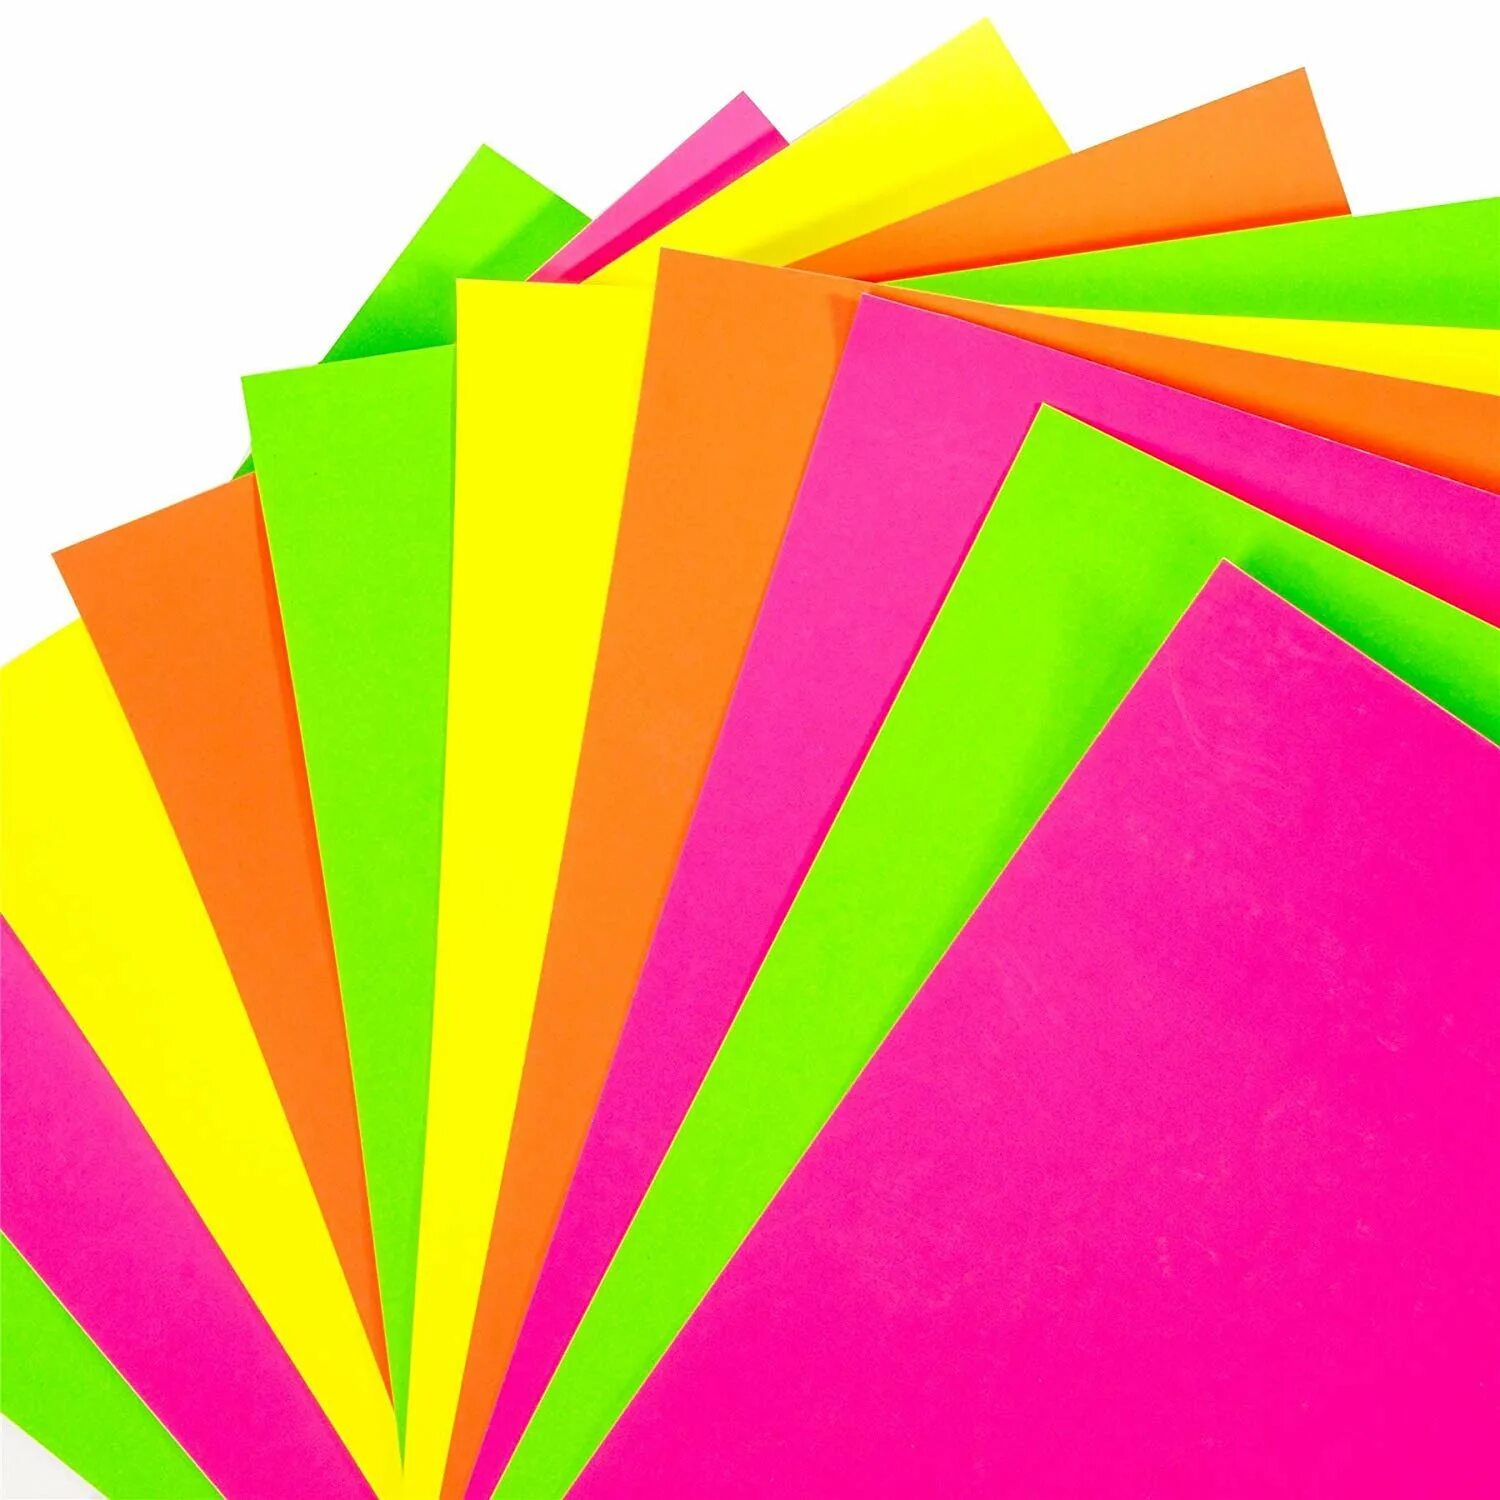 Цветная принтерная бумага а4. Ксероксная цветная бумага а4 Леонардо. Разноцветная бумага для принтера. Цветная бумага яркая. Печать цветных страниц